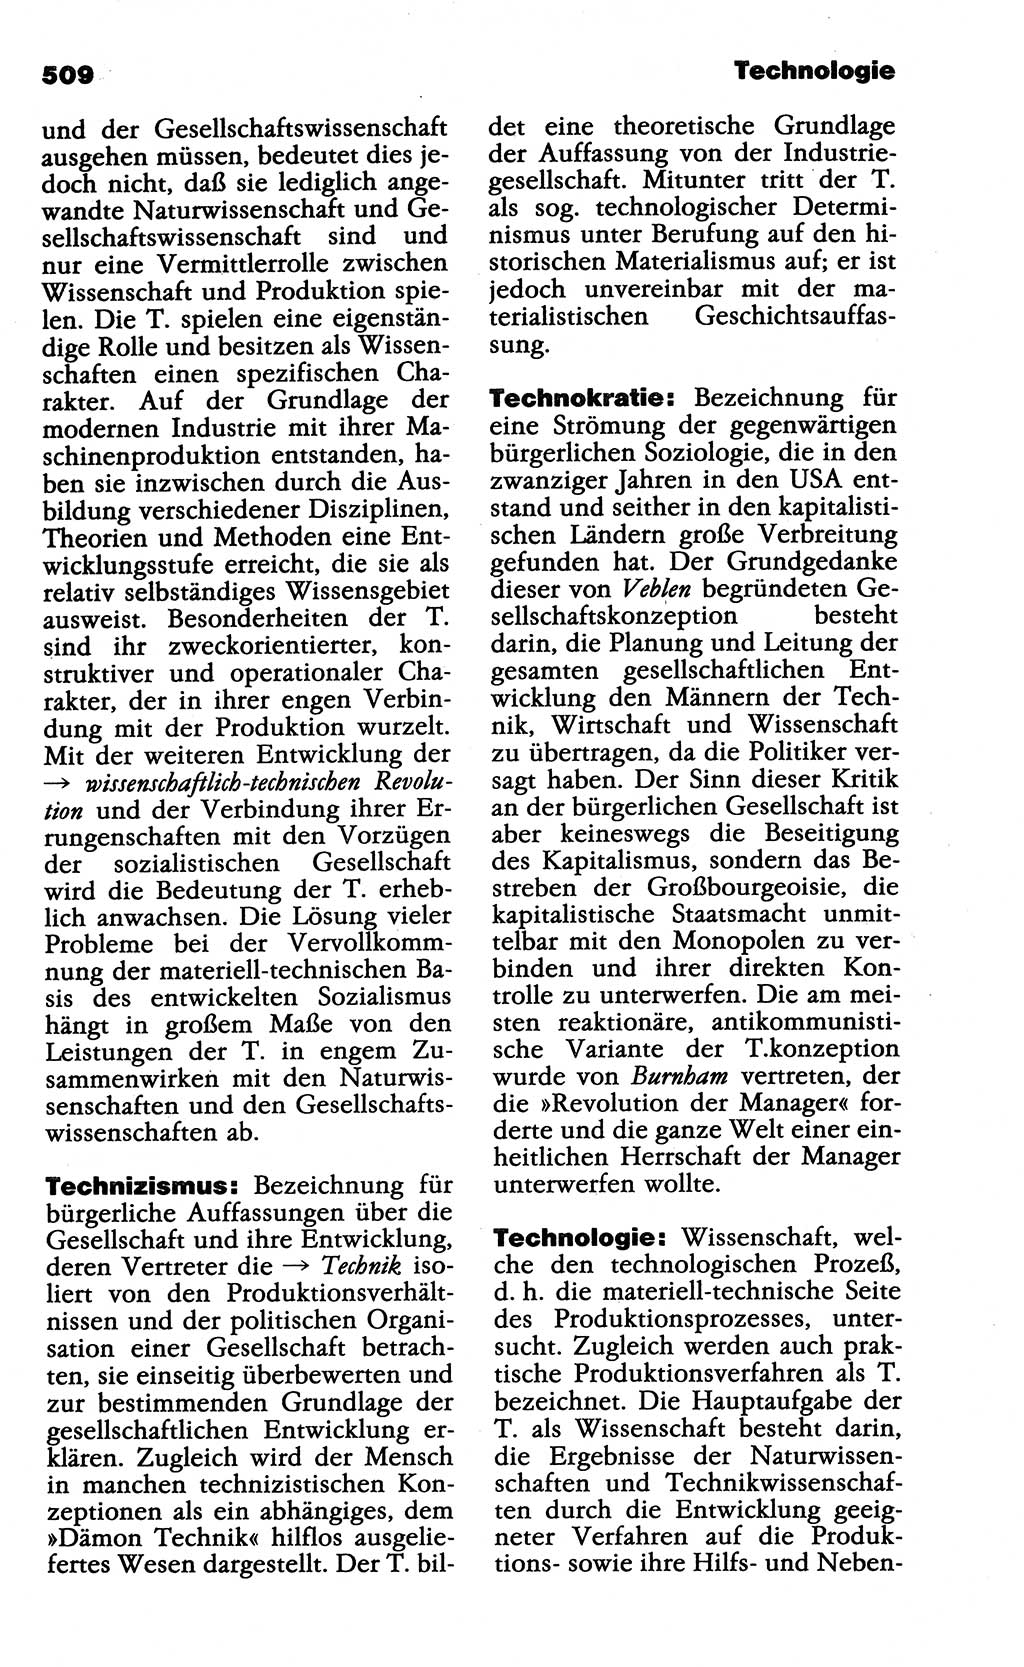 Wörterbuch der marxistisch-leninistischen Philosophie [Deutsche Demokratische Republik (DDR)] 1985, Seite 509 (Wb. ML Phil. DDR 1985, S. 509)